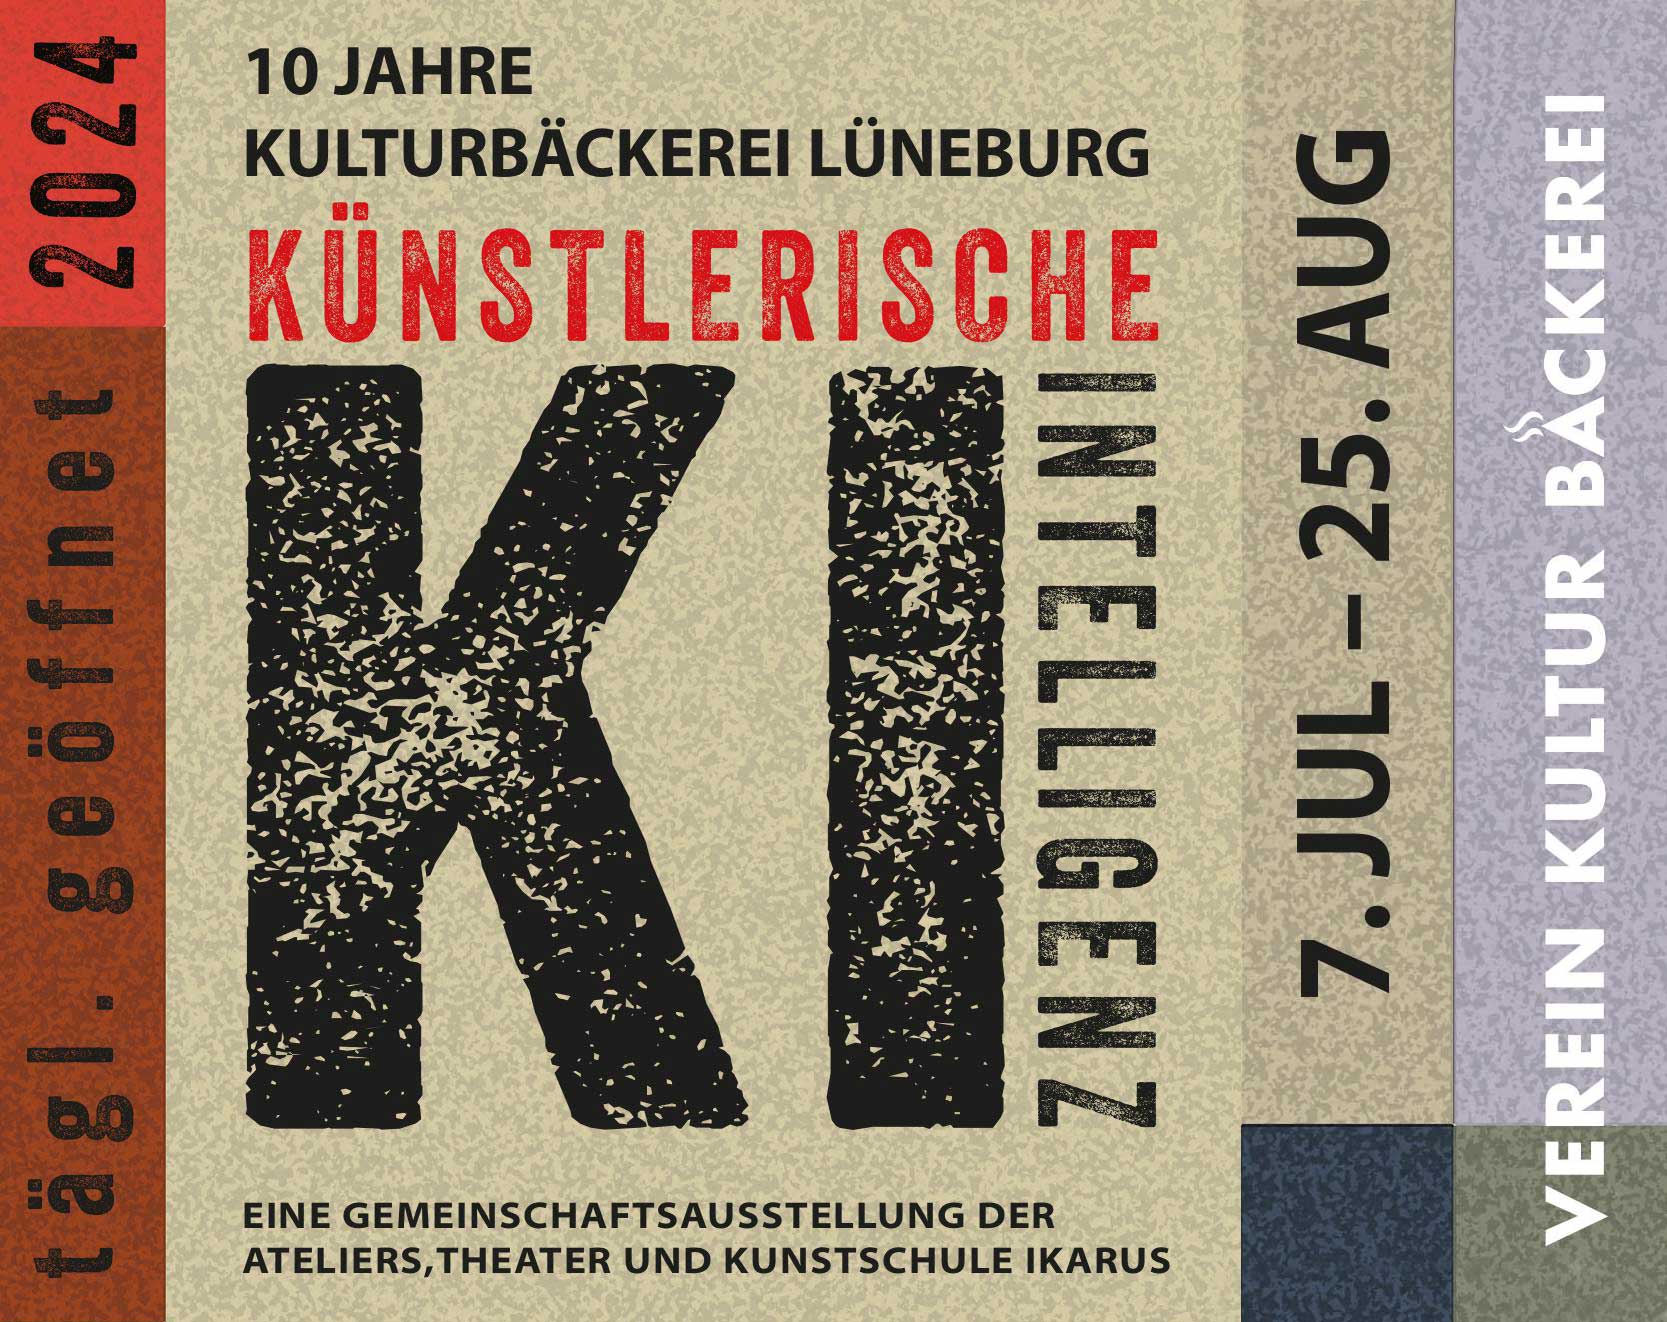 KI – Künstlerische Intelligenz Lüneburg